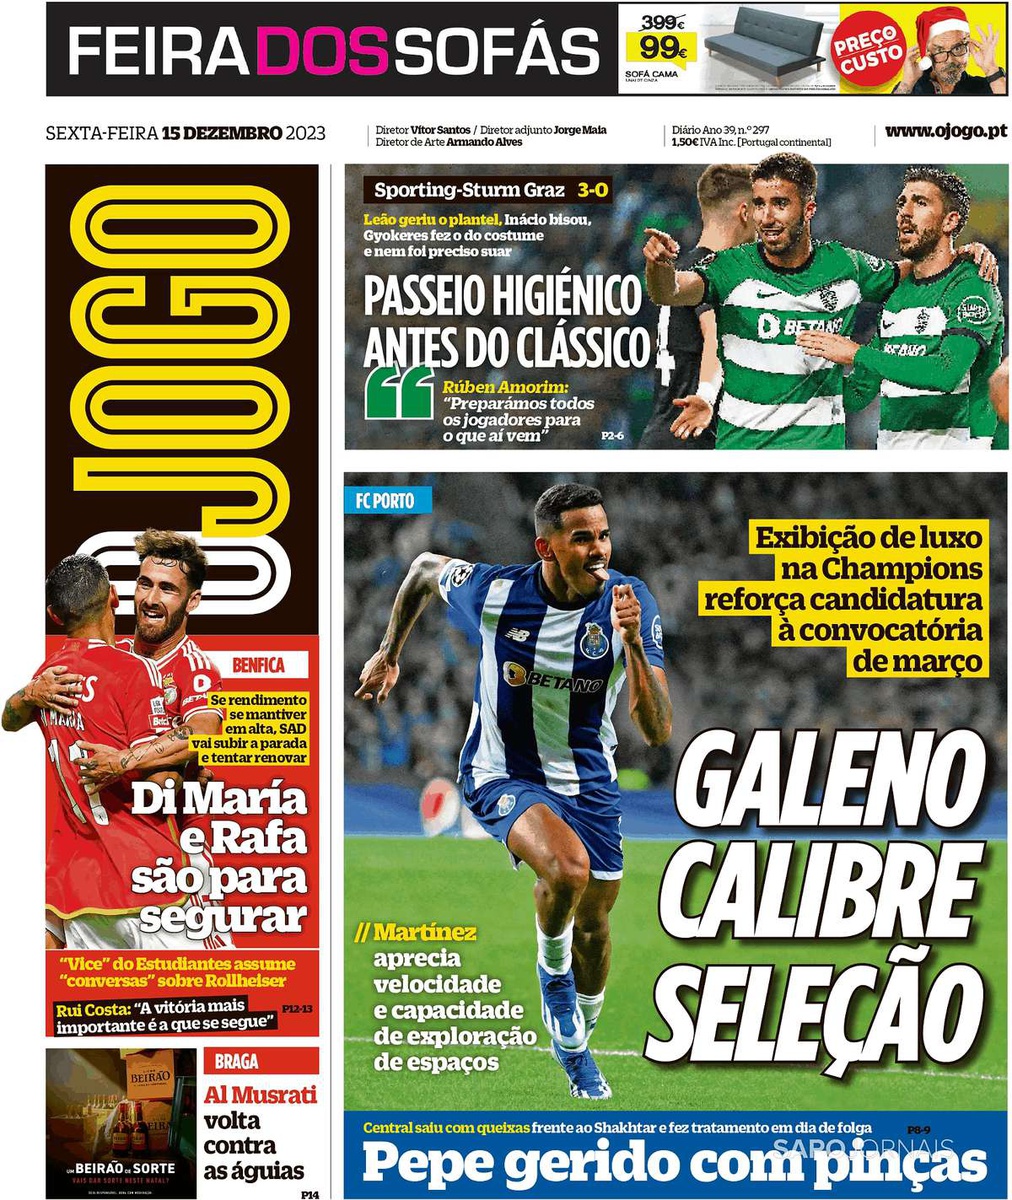 Vitória justa do Benfica em clássico amarrado - Futebol - Correio da Manhã